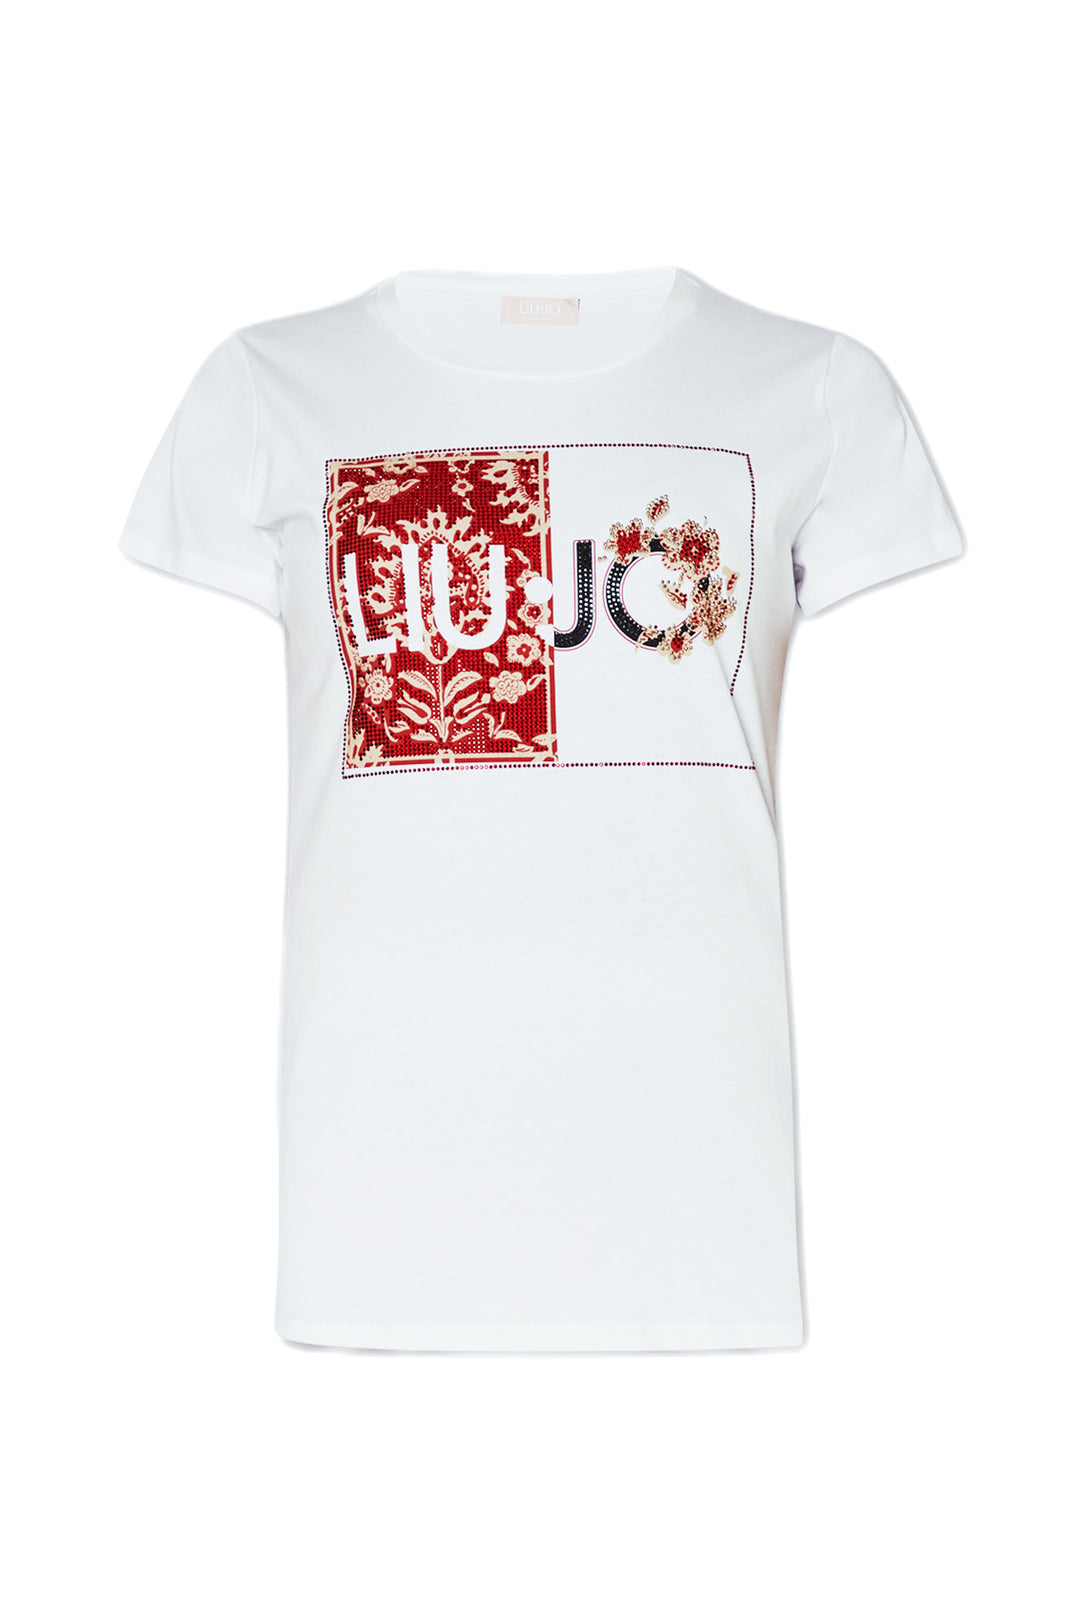 LIU JO T-shirt bianca in cotone con stampa LIU JO e applicazioni - Mancinelli 1954